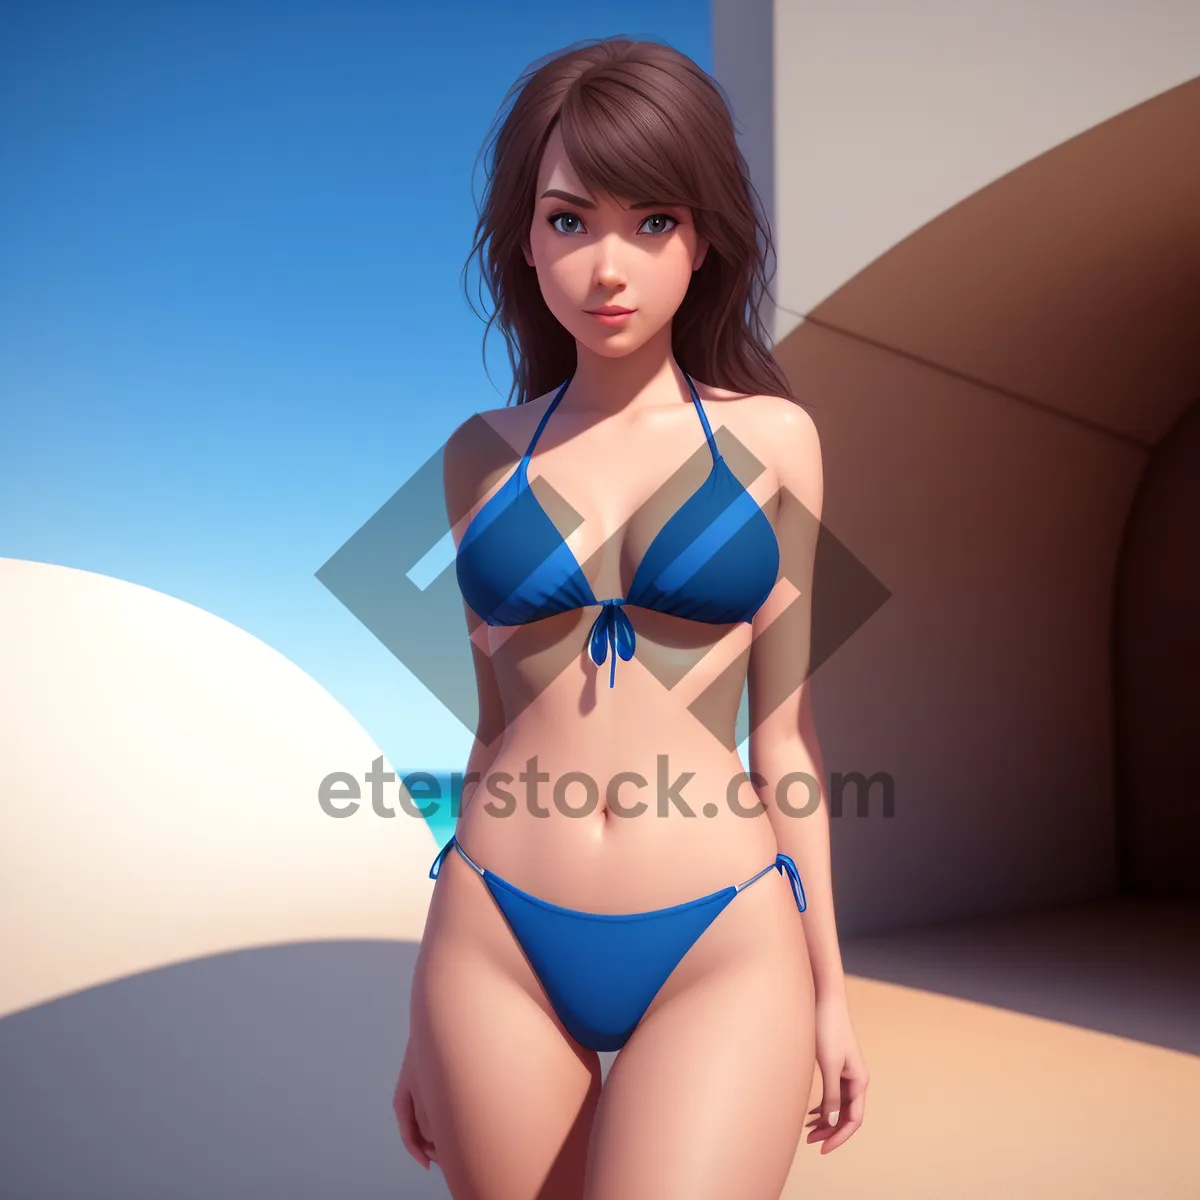 Picture of Seductive brunette poses in attractive bikini